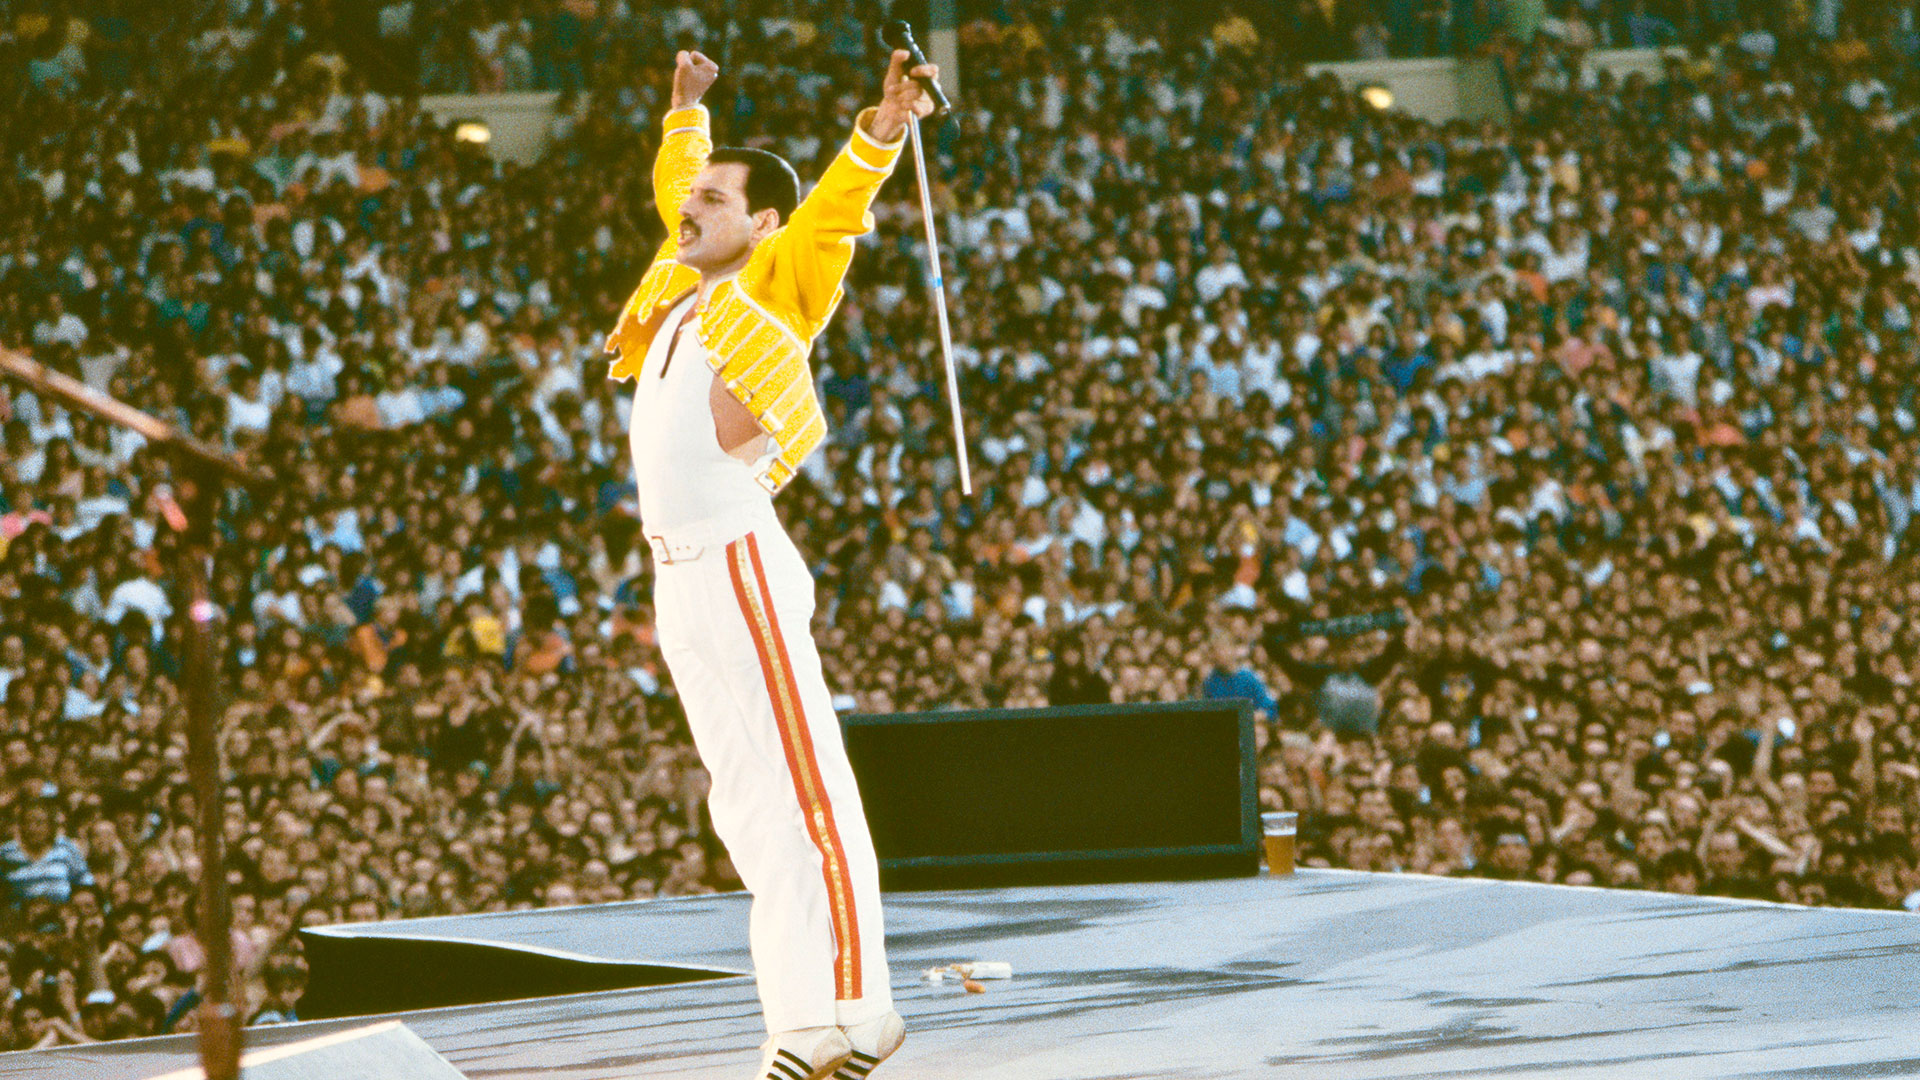 La exorbitante cifra en que podría venderse el catálogo musical completo de Queen